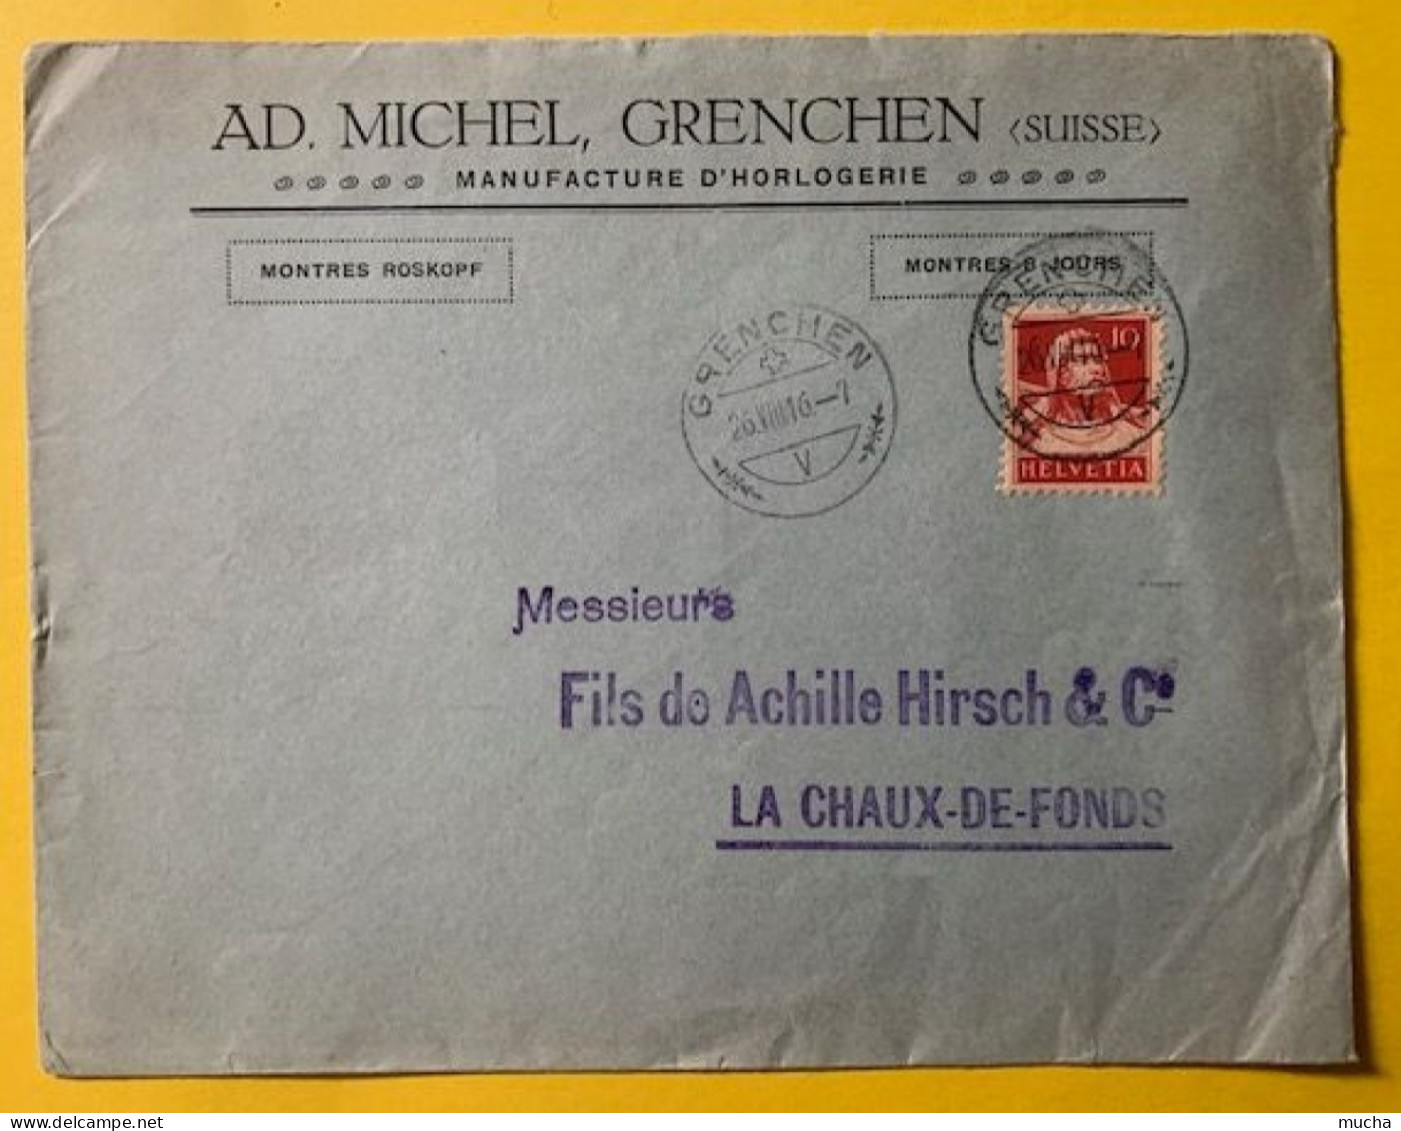 70019 - Suisse Lettre Ad. Michel Manufacture D'Horlogerie Grenchen 26.08.1916 - Orologeria